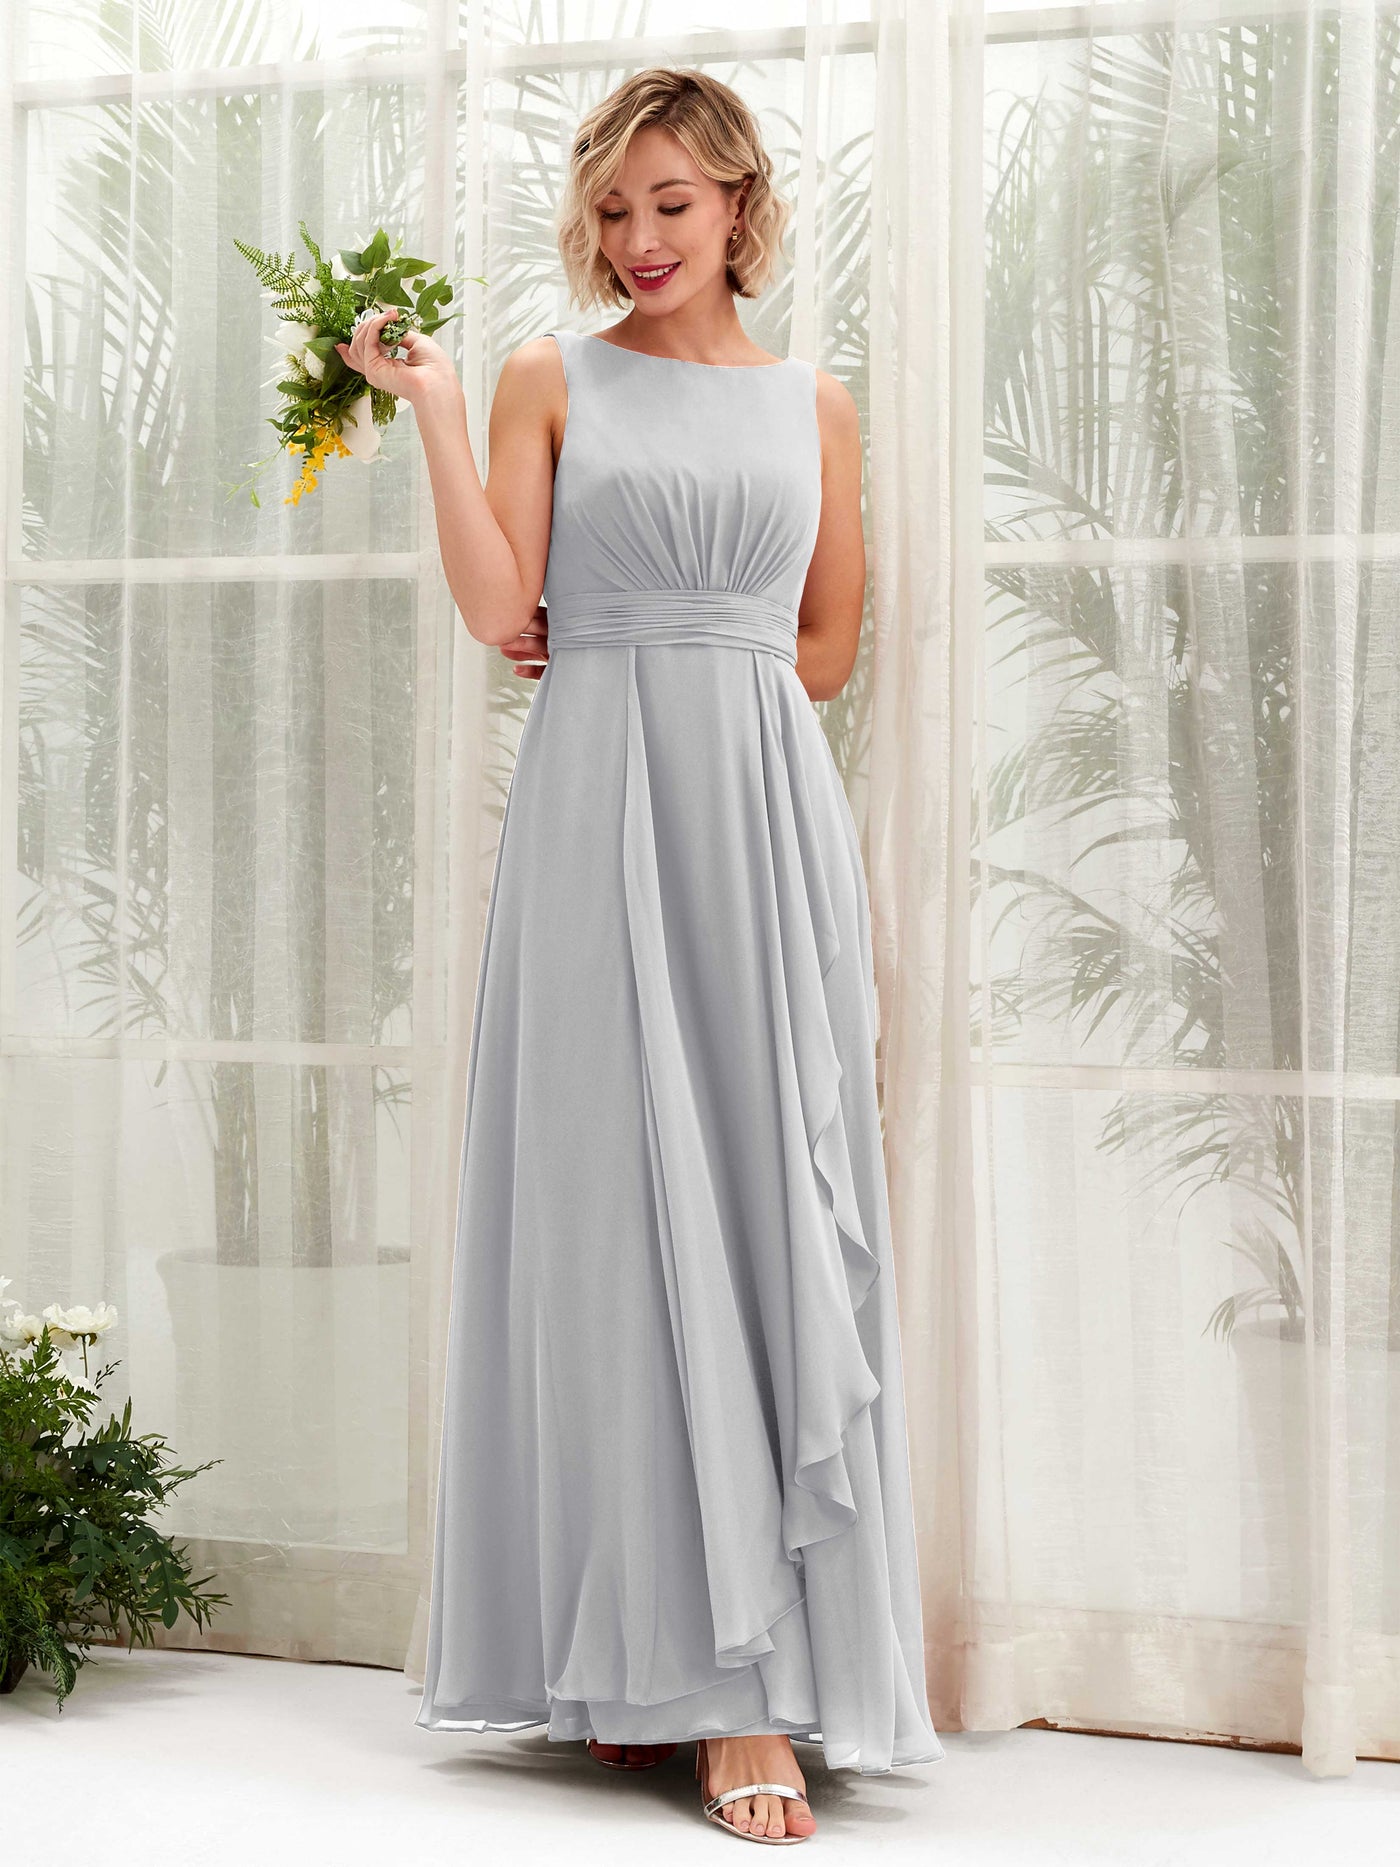 Chiffon poylester 60 fabric Oyster 1 yard formal, wedding, curtains,  crafts, bridesmaid dress.. flower girl dress..